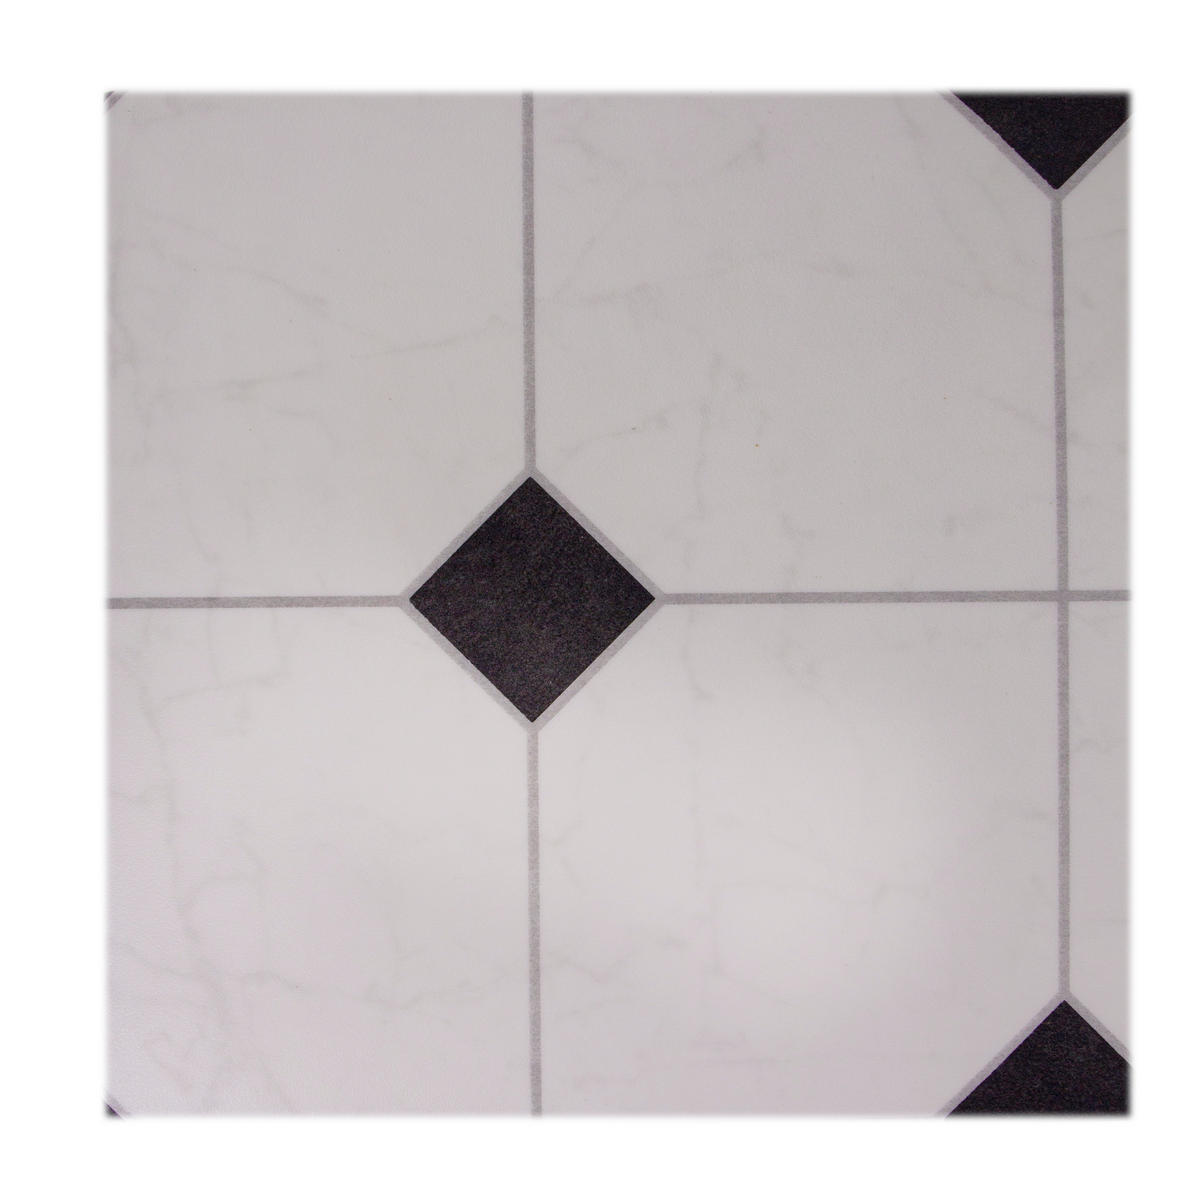 Vinylboden pro m² Strong Fliese weiß B: ca. 300 cm Strong - weiß/schwarz (300,00/200,00cm)